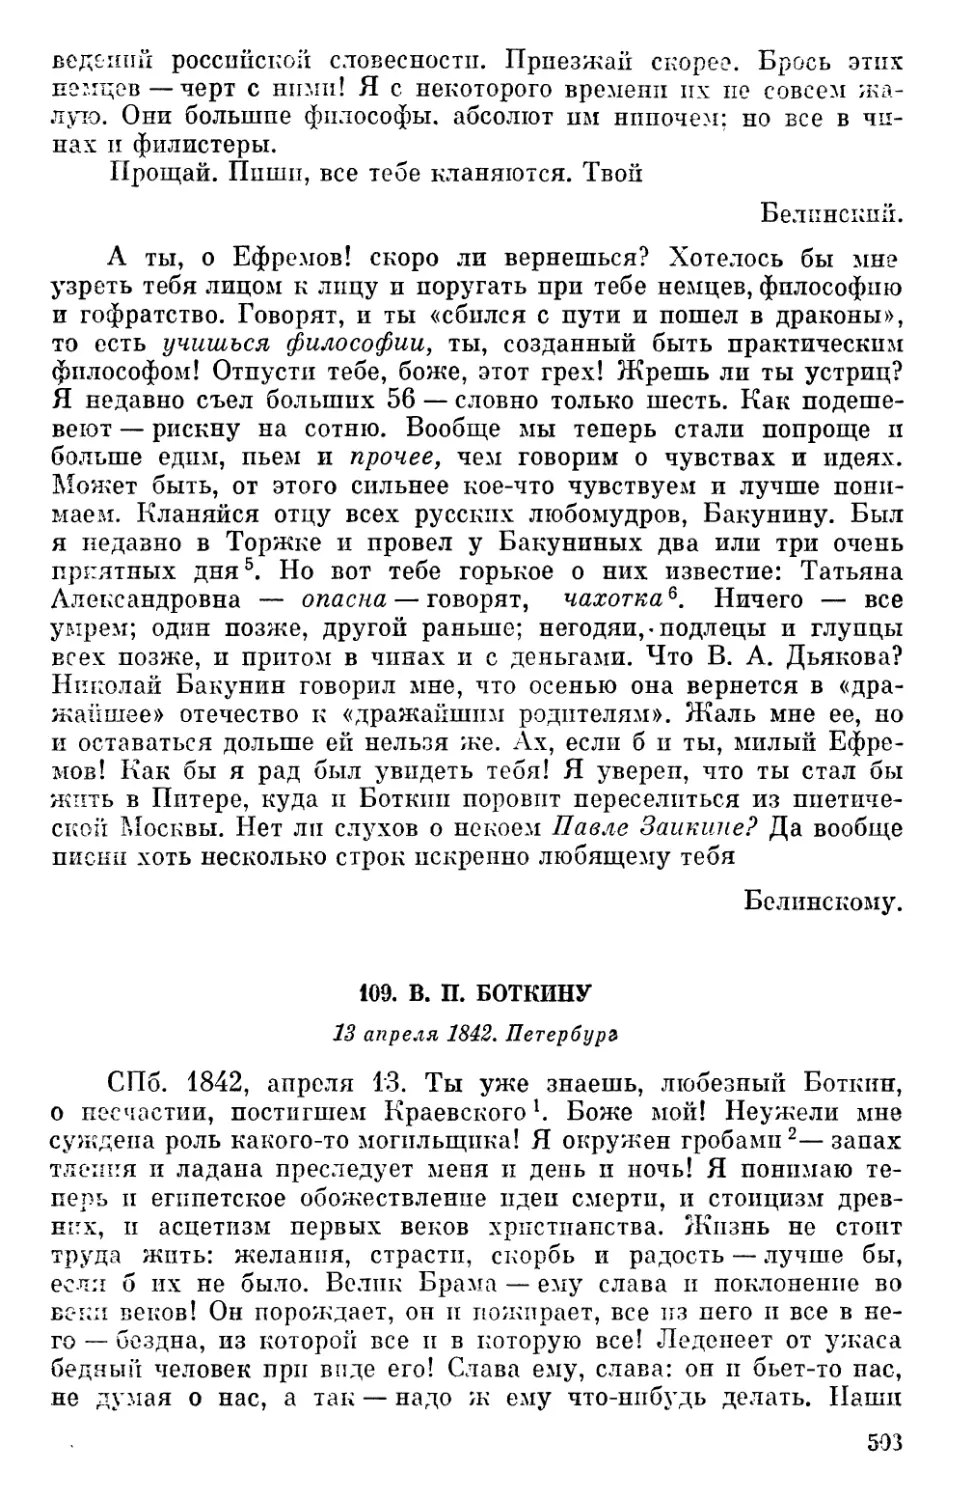 109. В. П. Боткину. 13 апреля 1842